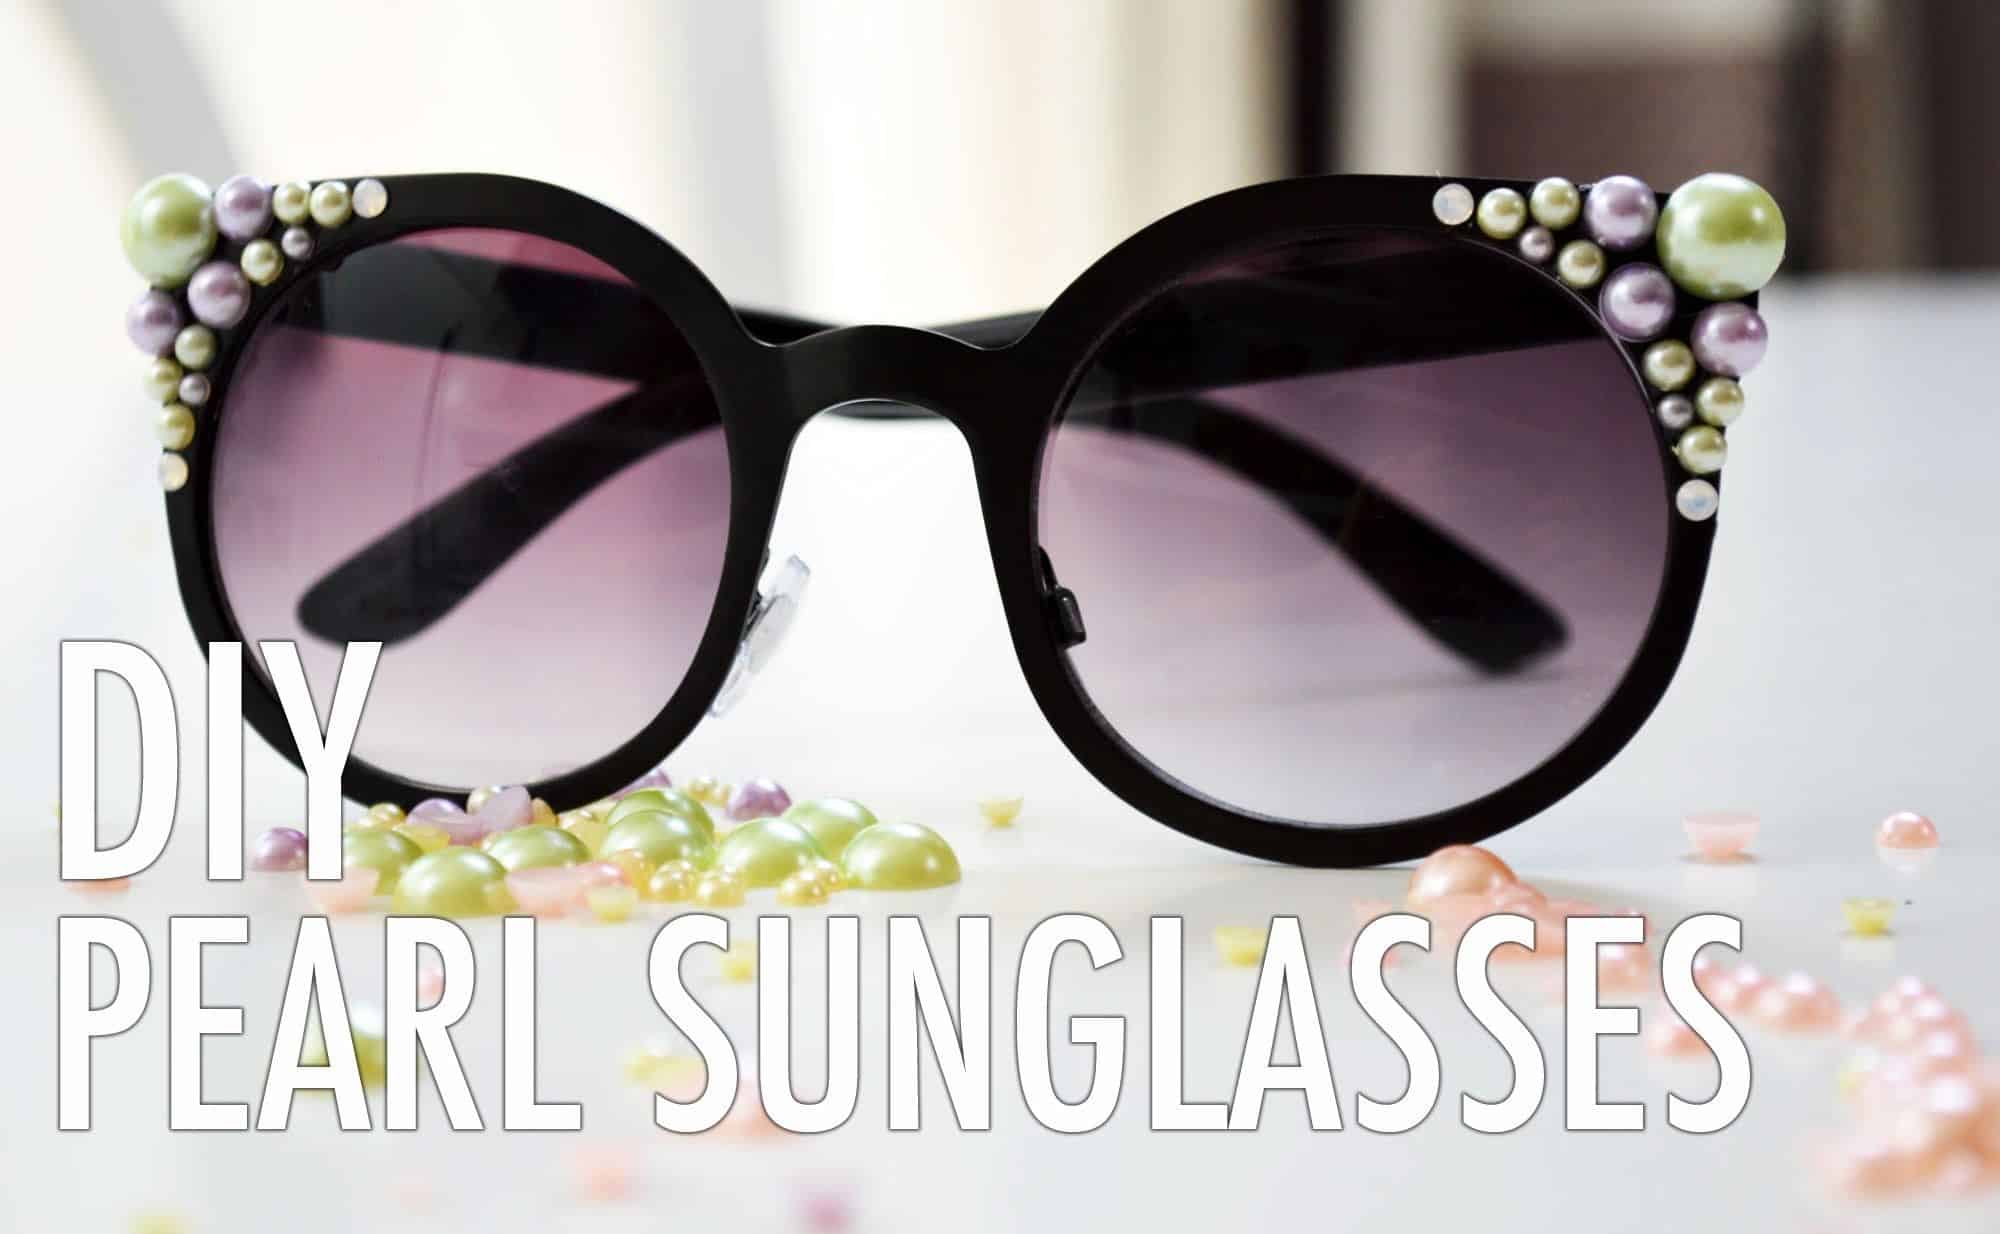 DIY pearl sunglasses